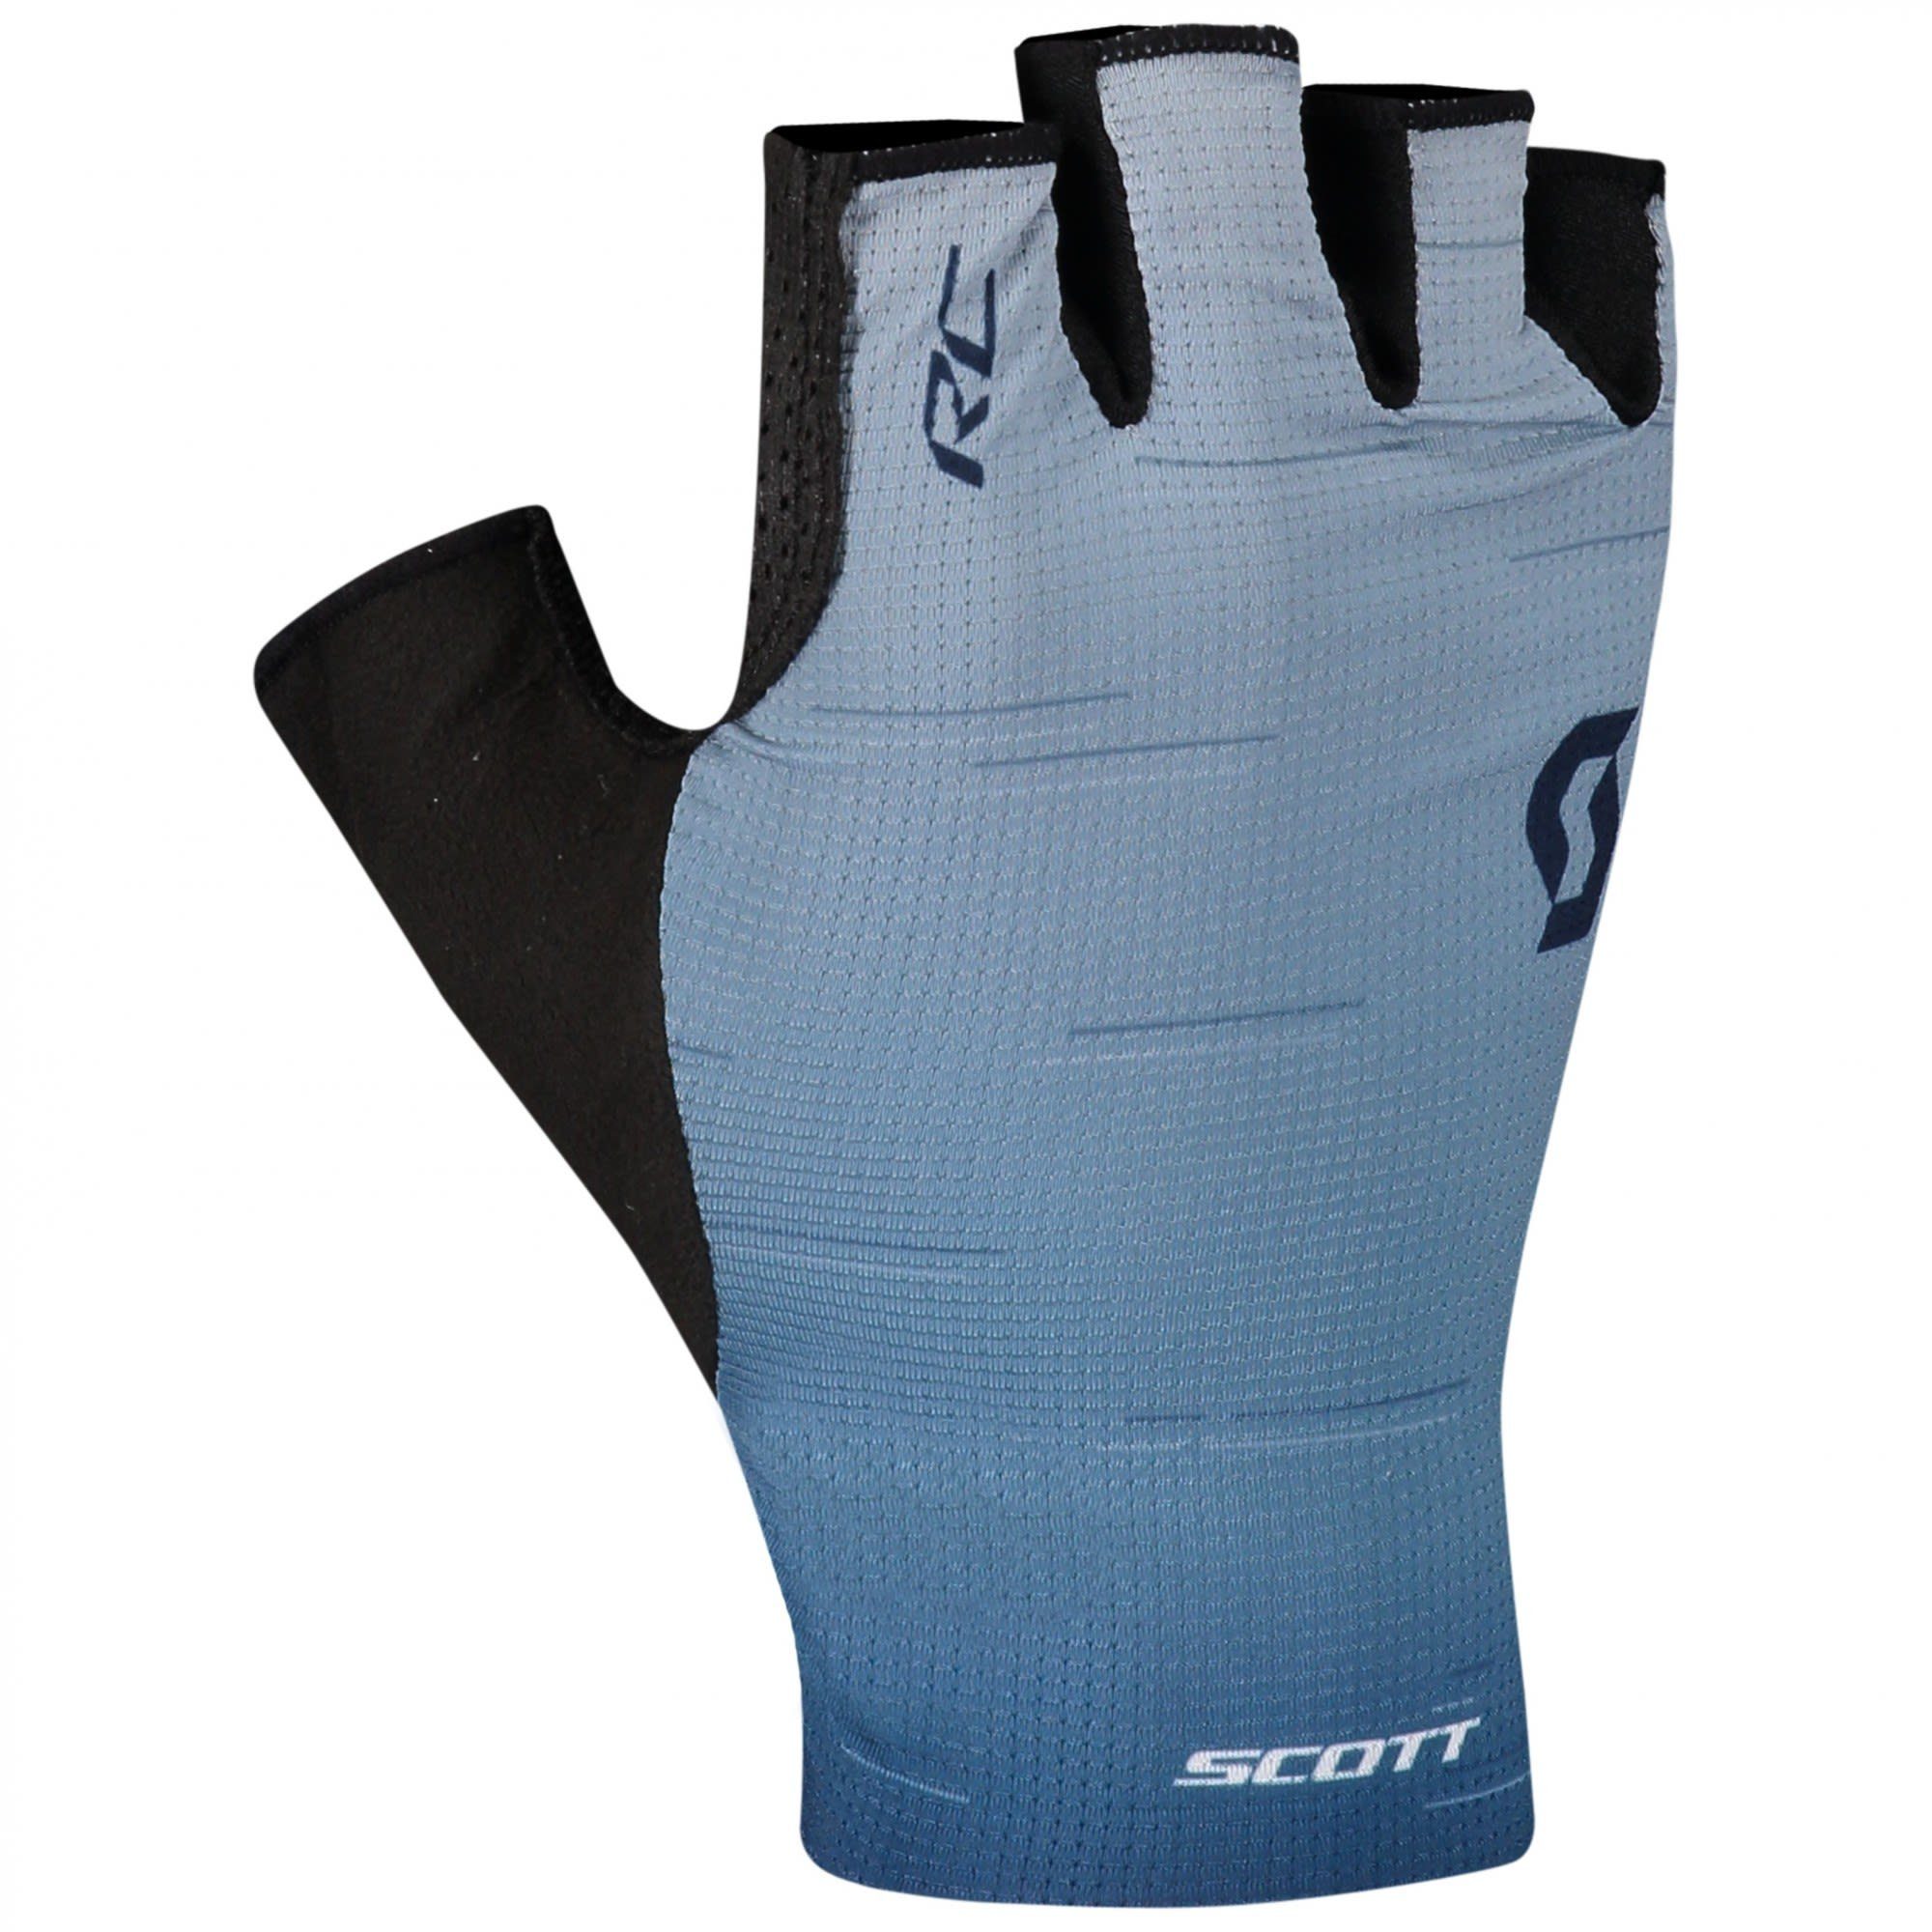 Fleecehandschuhe - Sf Glove Blue Pro Scott Rc Glace Midnight (vorgängermodell) Scott Blue